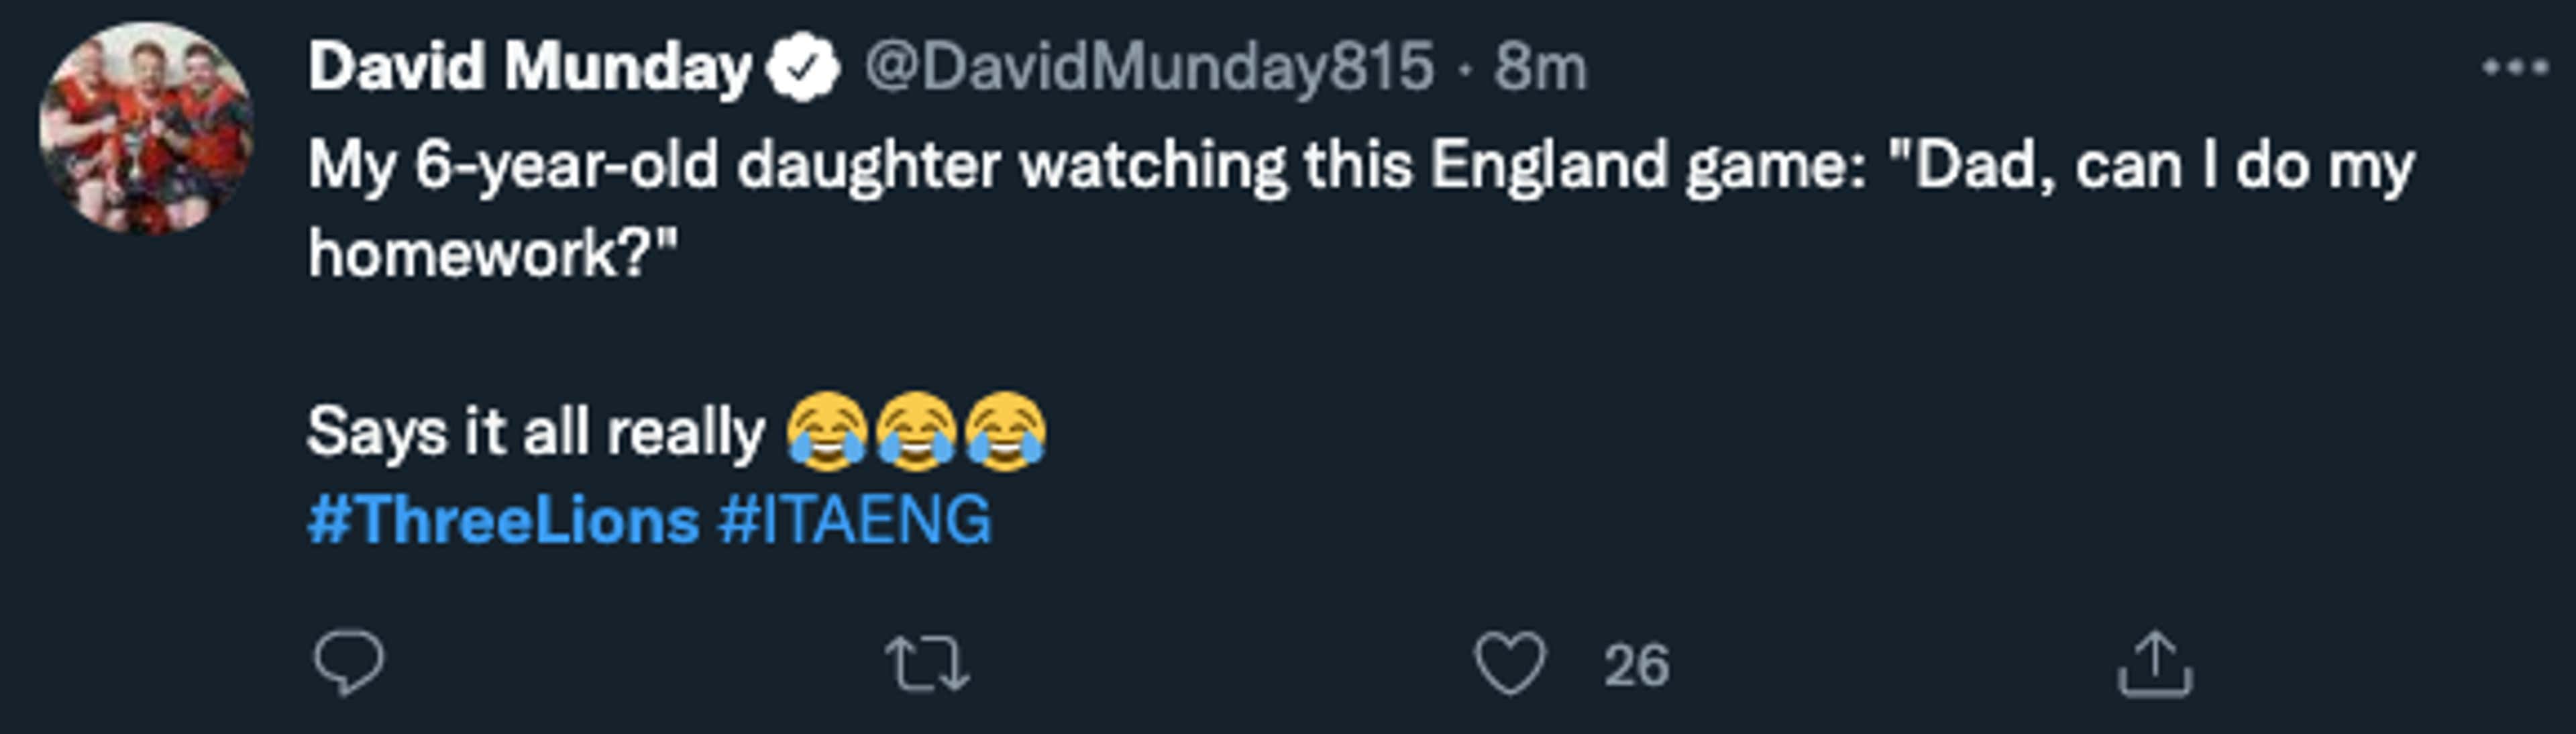 England tweet 3